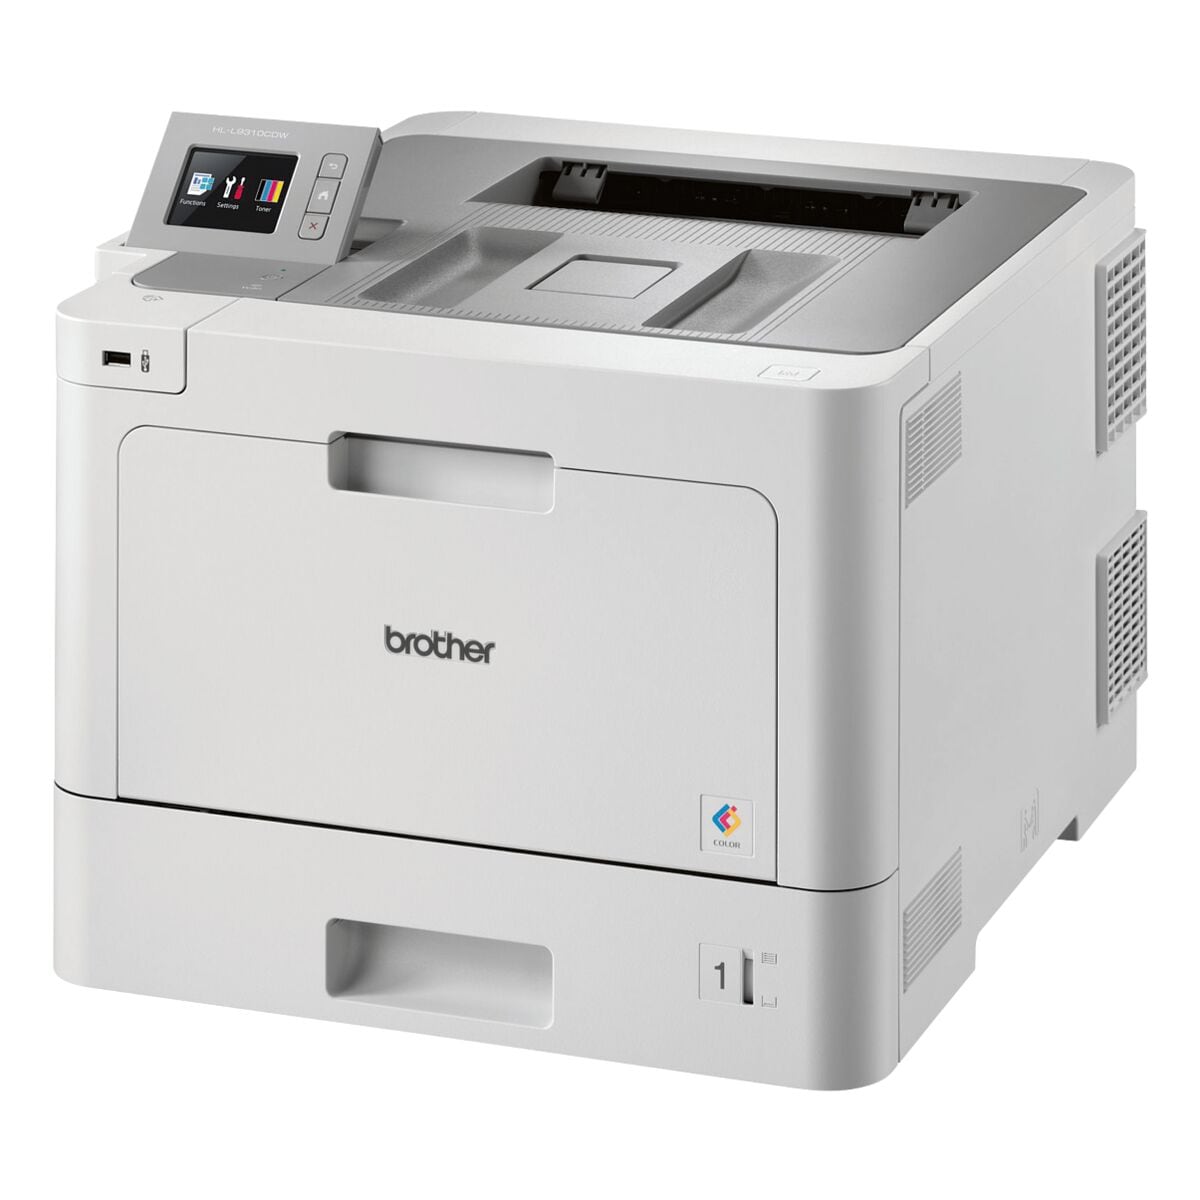 Brother HL-L9310CDW Laserdrucker, A4 Farb-Laserdrucker, 2400 x 600 dpi, mit LAN und WLAN